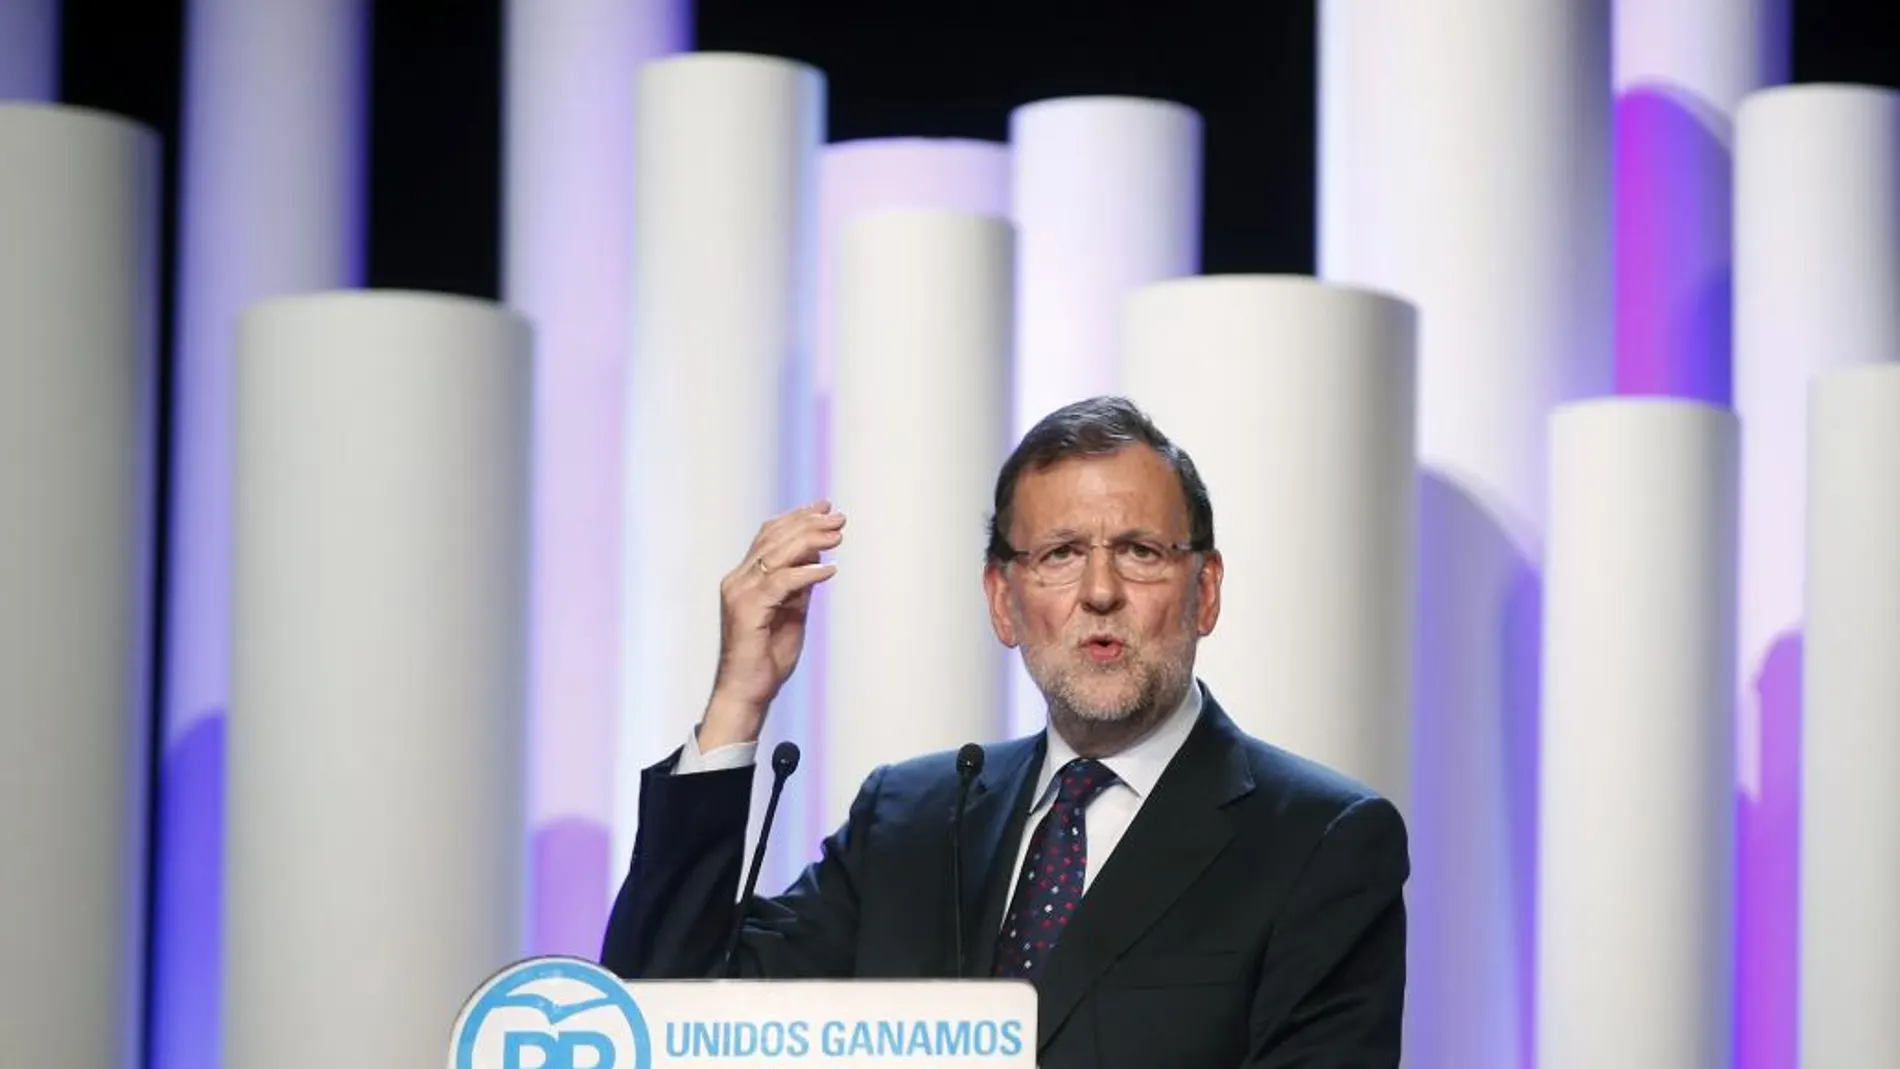 El presidente del Gobierno, Mariano Rajoy, interviene durante el acto de cierre de campaña de las elecciones del 27S